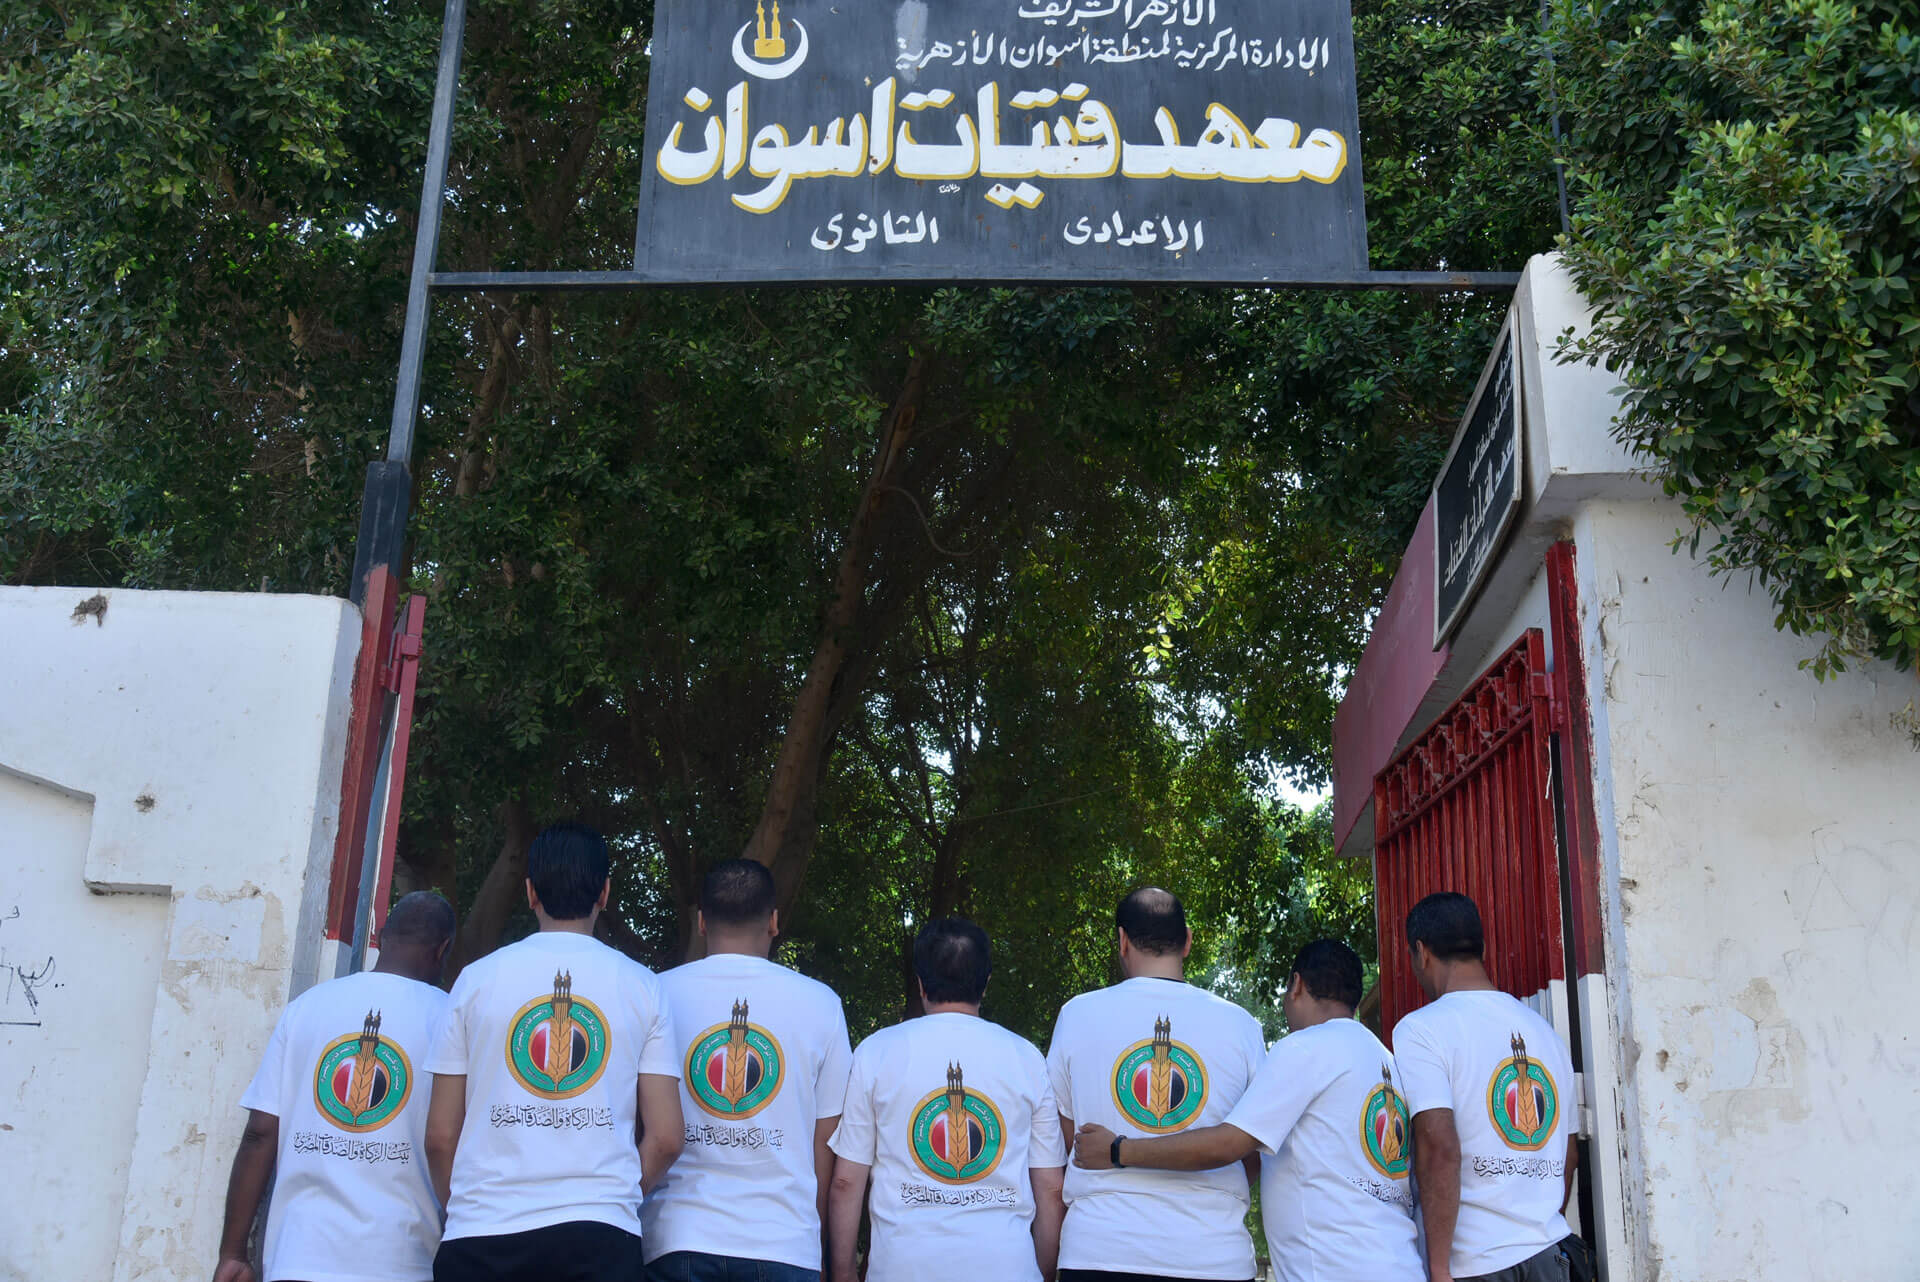 8بيت الزكاة والصدقات المصري يبدأ حملة لتوزيع ١٠٠ ألف شنطة مدرسية بمسلتزماتها على الأيتام وذوي الهمم في المدارس العامة والأزهرية1695292023